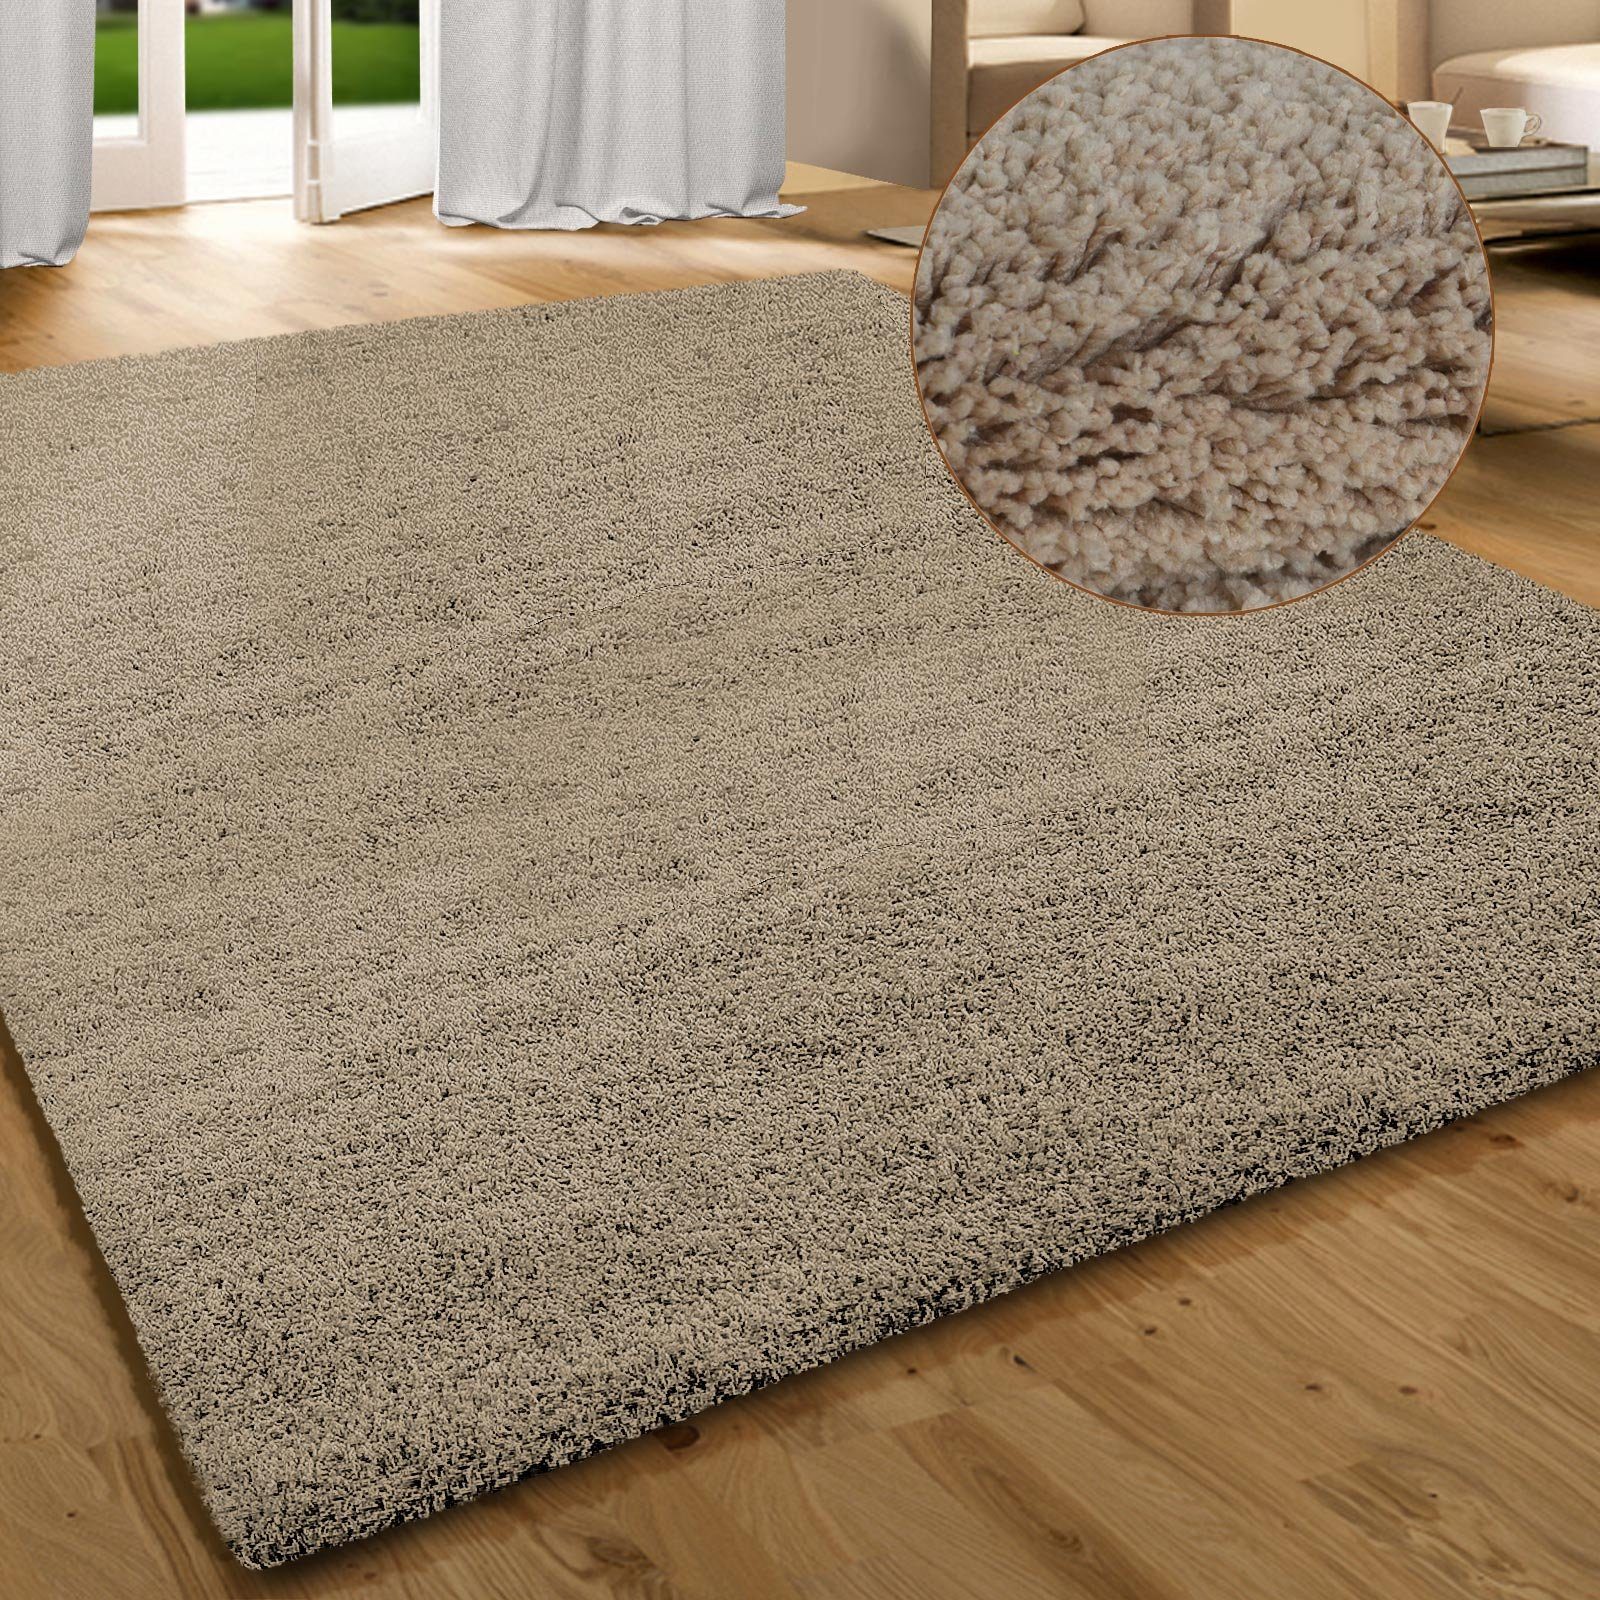 Home & Garden Sisal/Seagrass Area Rugs Rugs & Carpets Rutschfester  Bodenteppich flauschige kleine Teppiche Sitzkissen Shaggy Beige